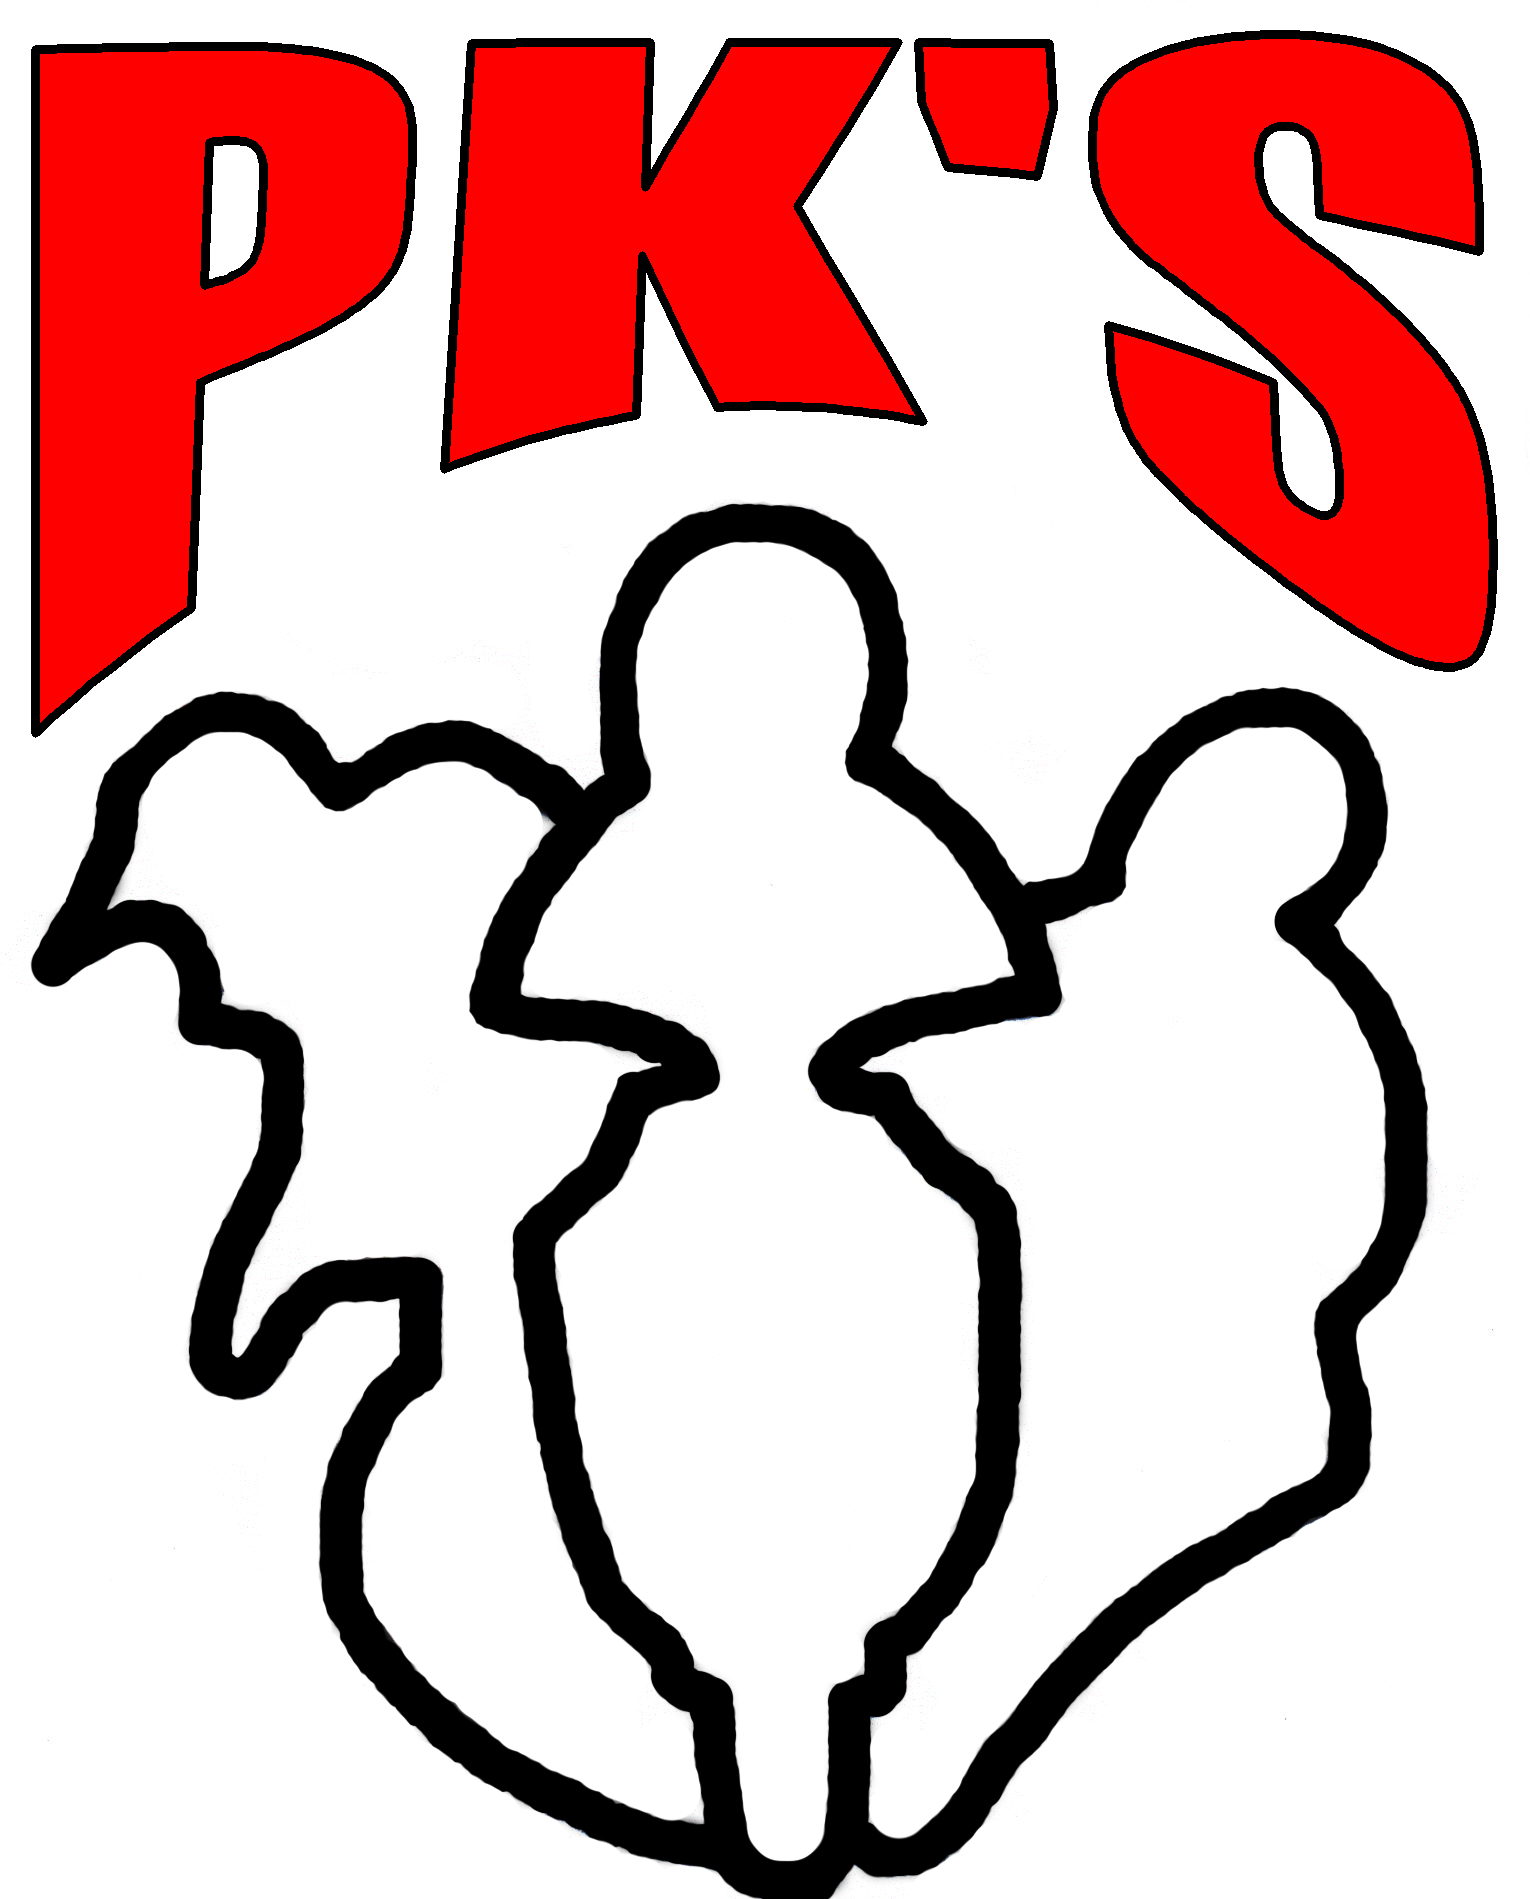 pk-s